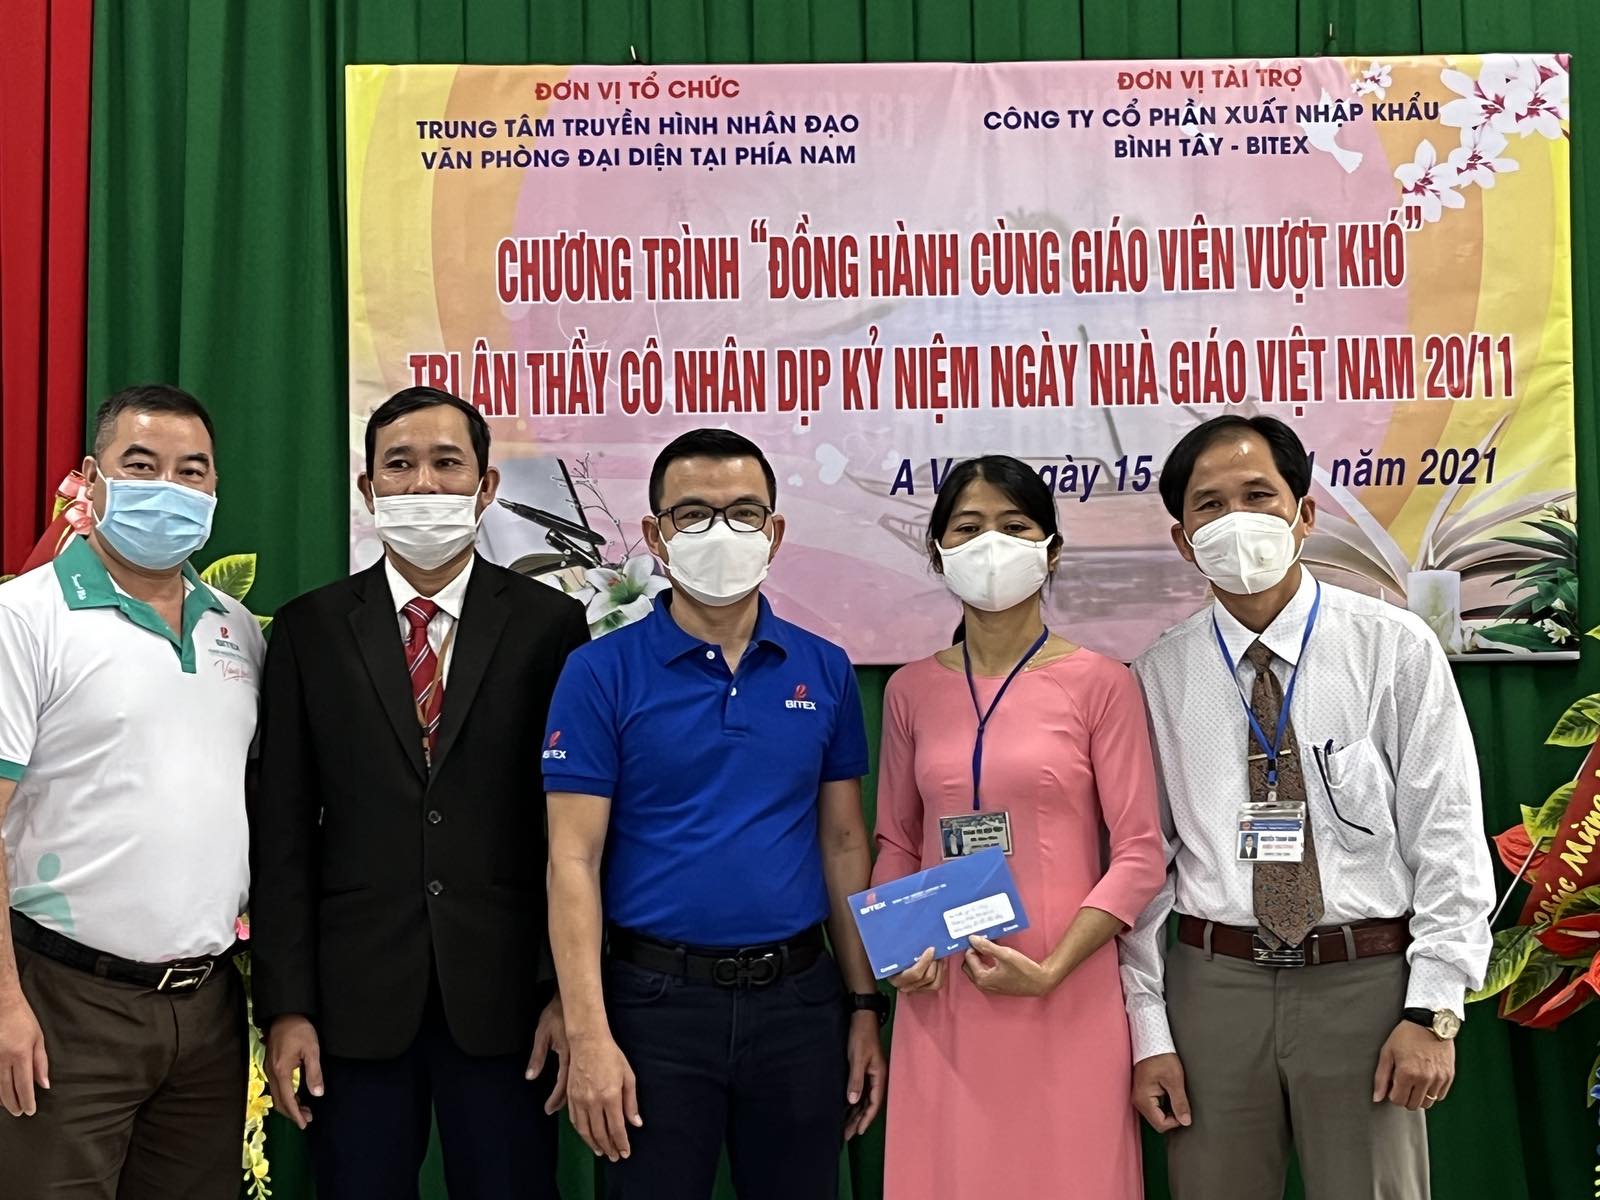 “Đồng hành cùng giáo viên vượt khó” trao hỗ trợ cho giáo viên Quảng Trị - Quảng Bình